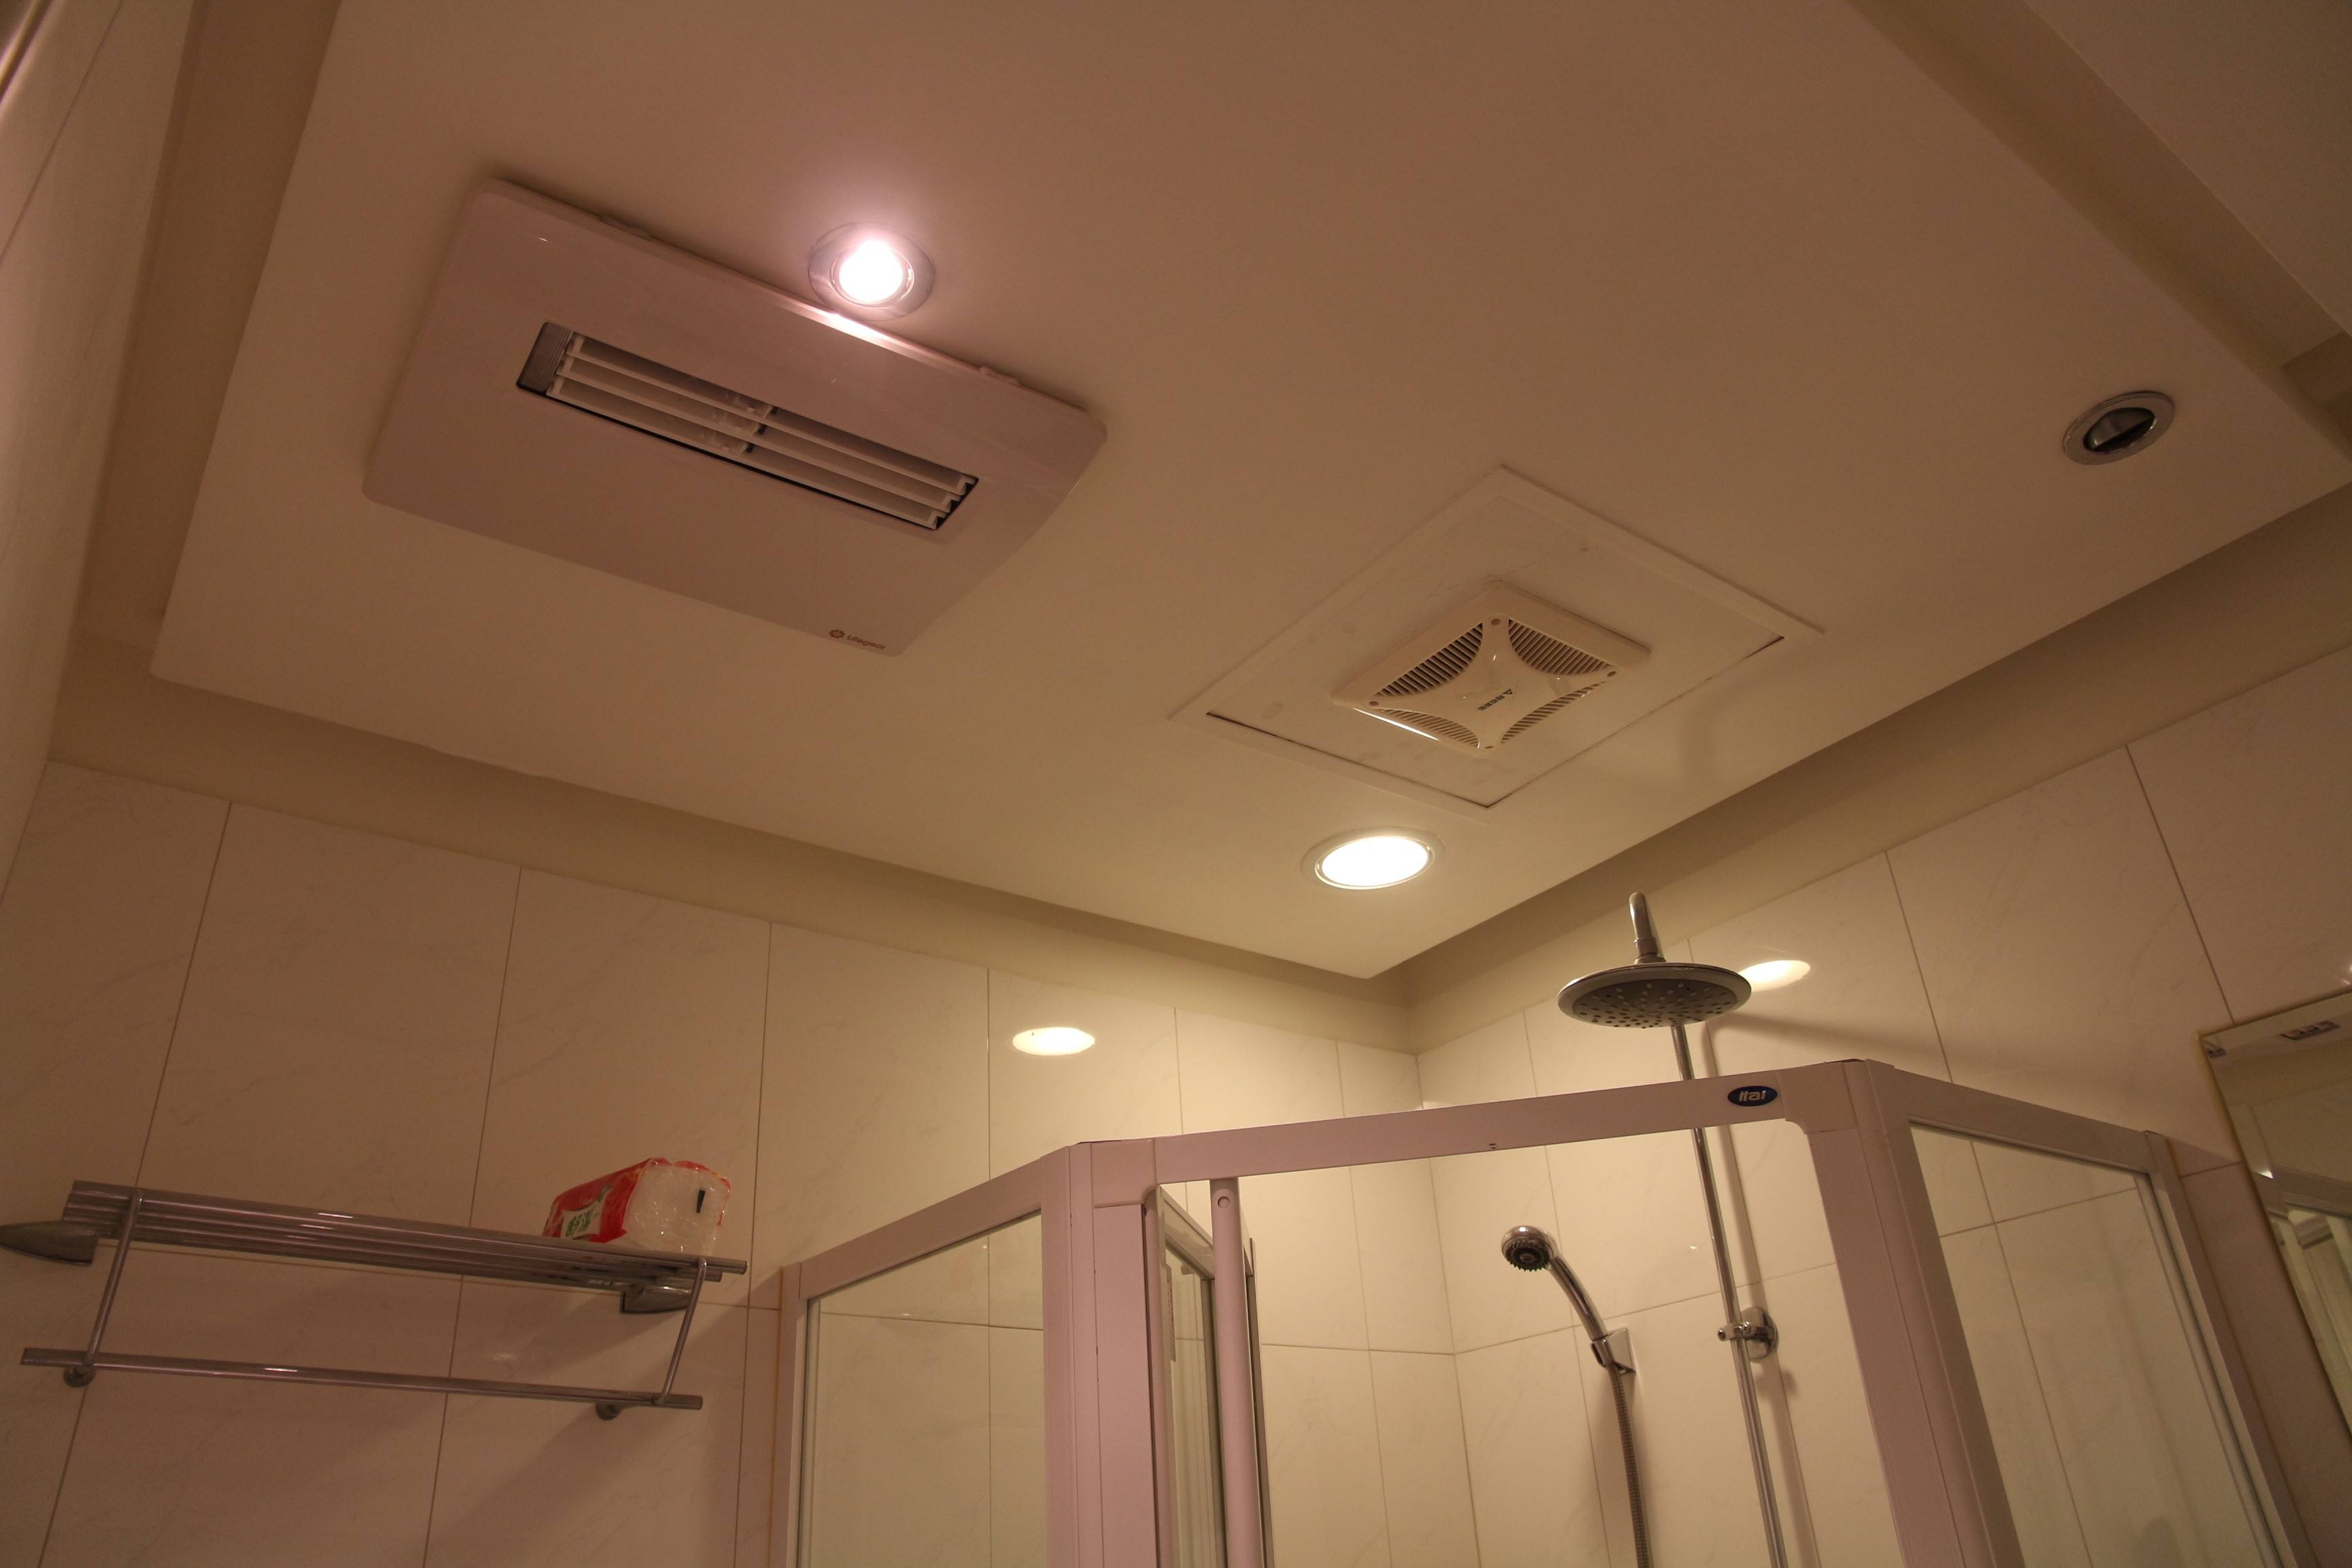 三菱电机浴室暖风机—三菱电机浴室暖风机的优势介绍